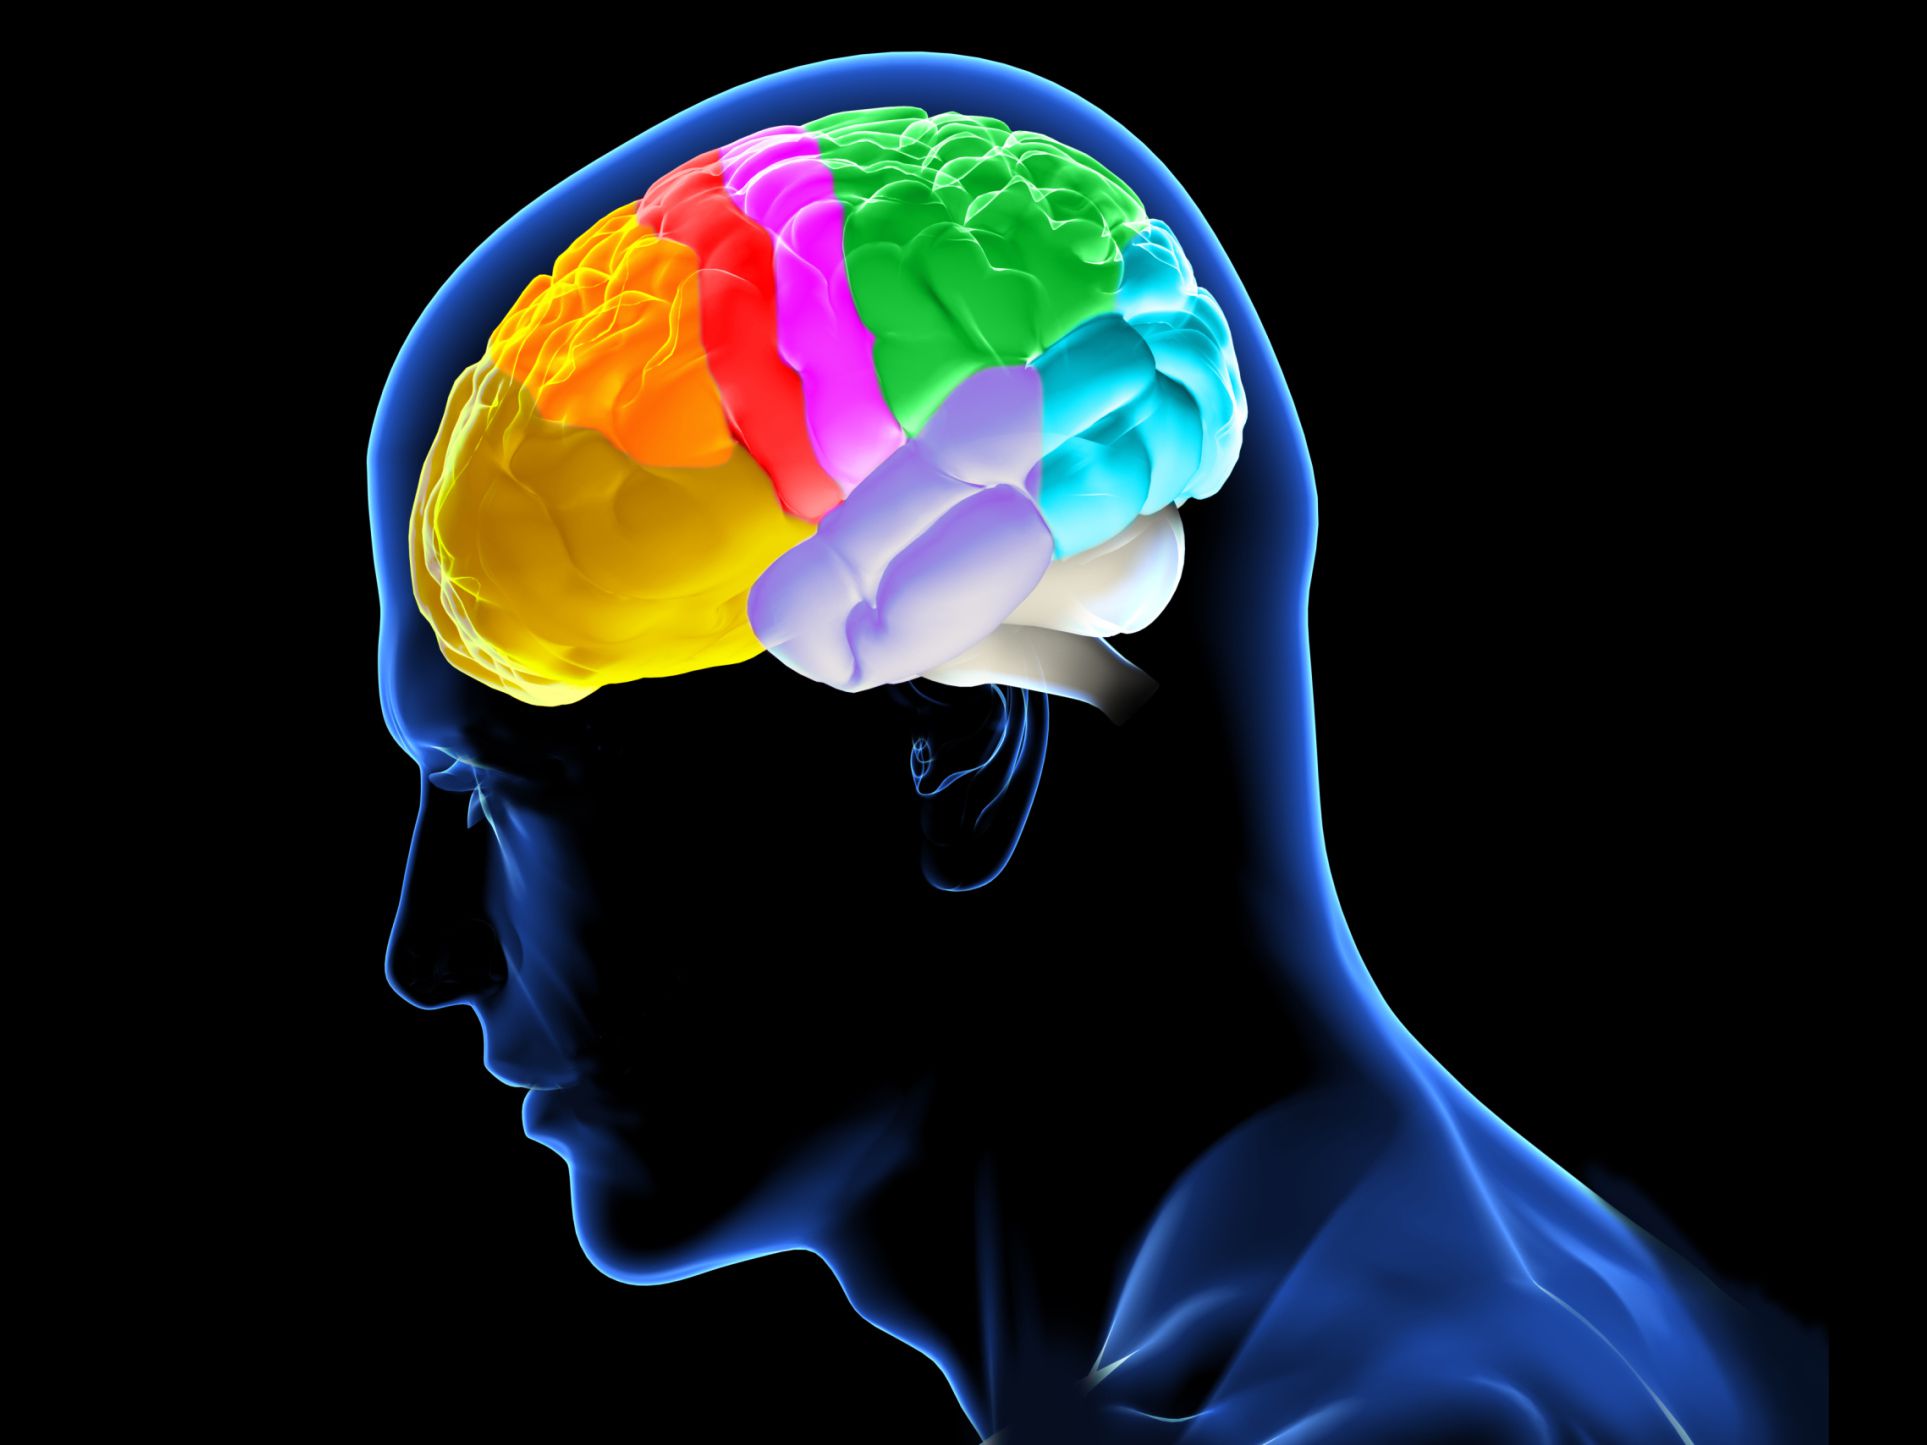 احتمال بروز اختلالات مغزی در مبتلایان کرونا